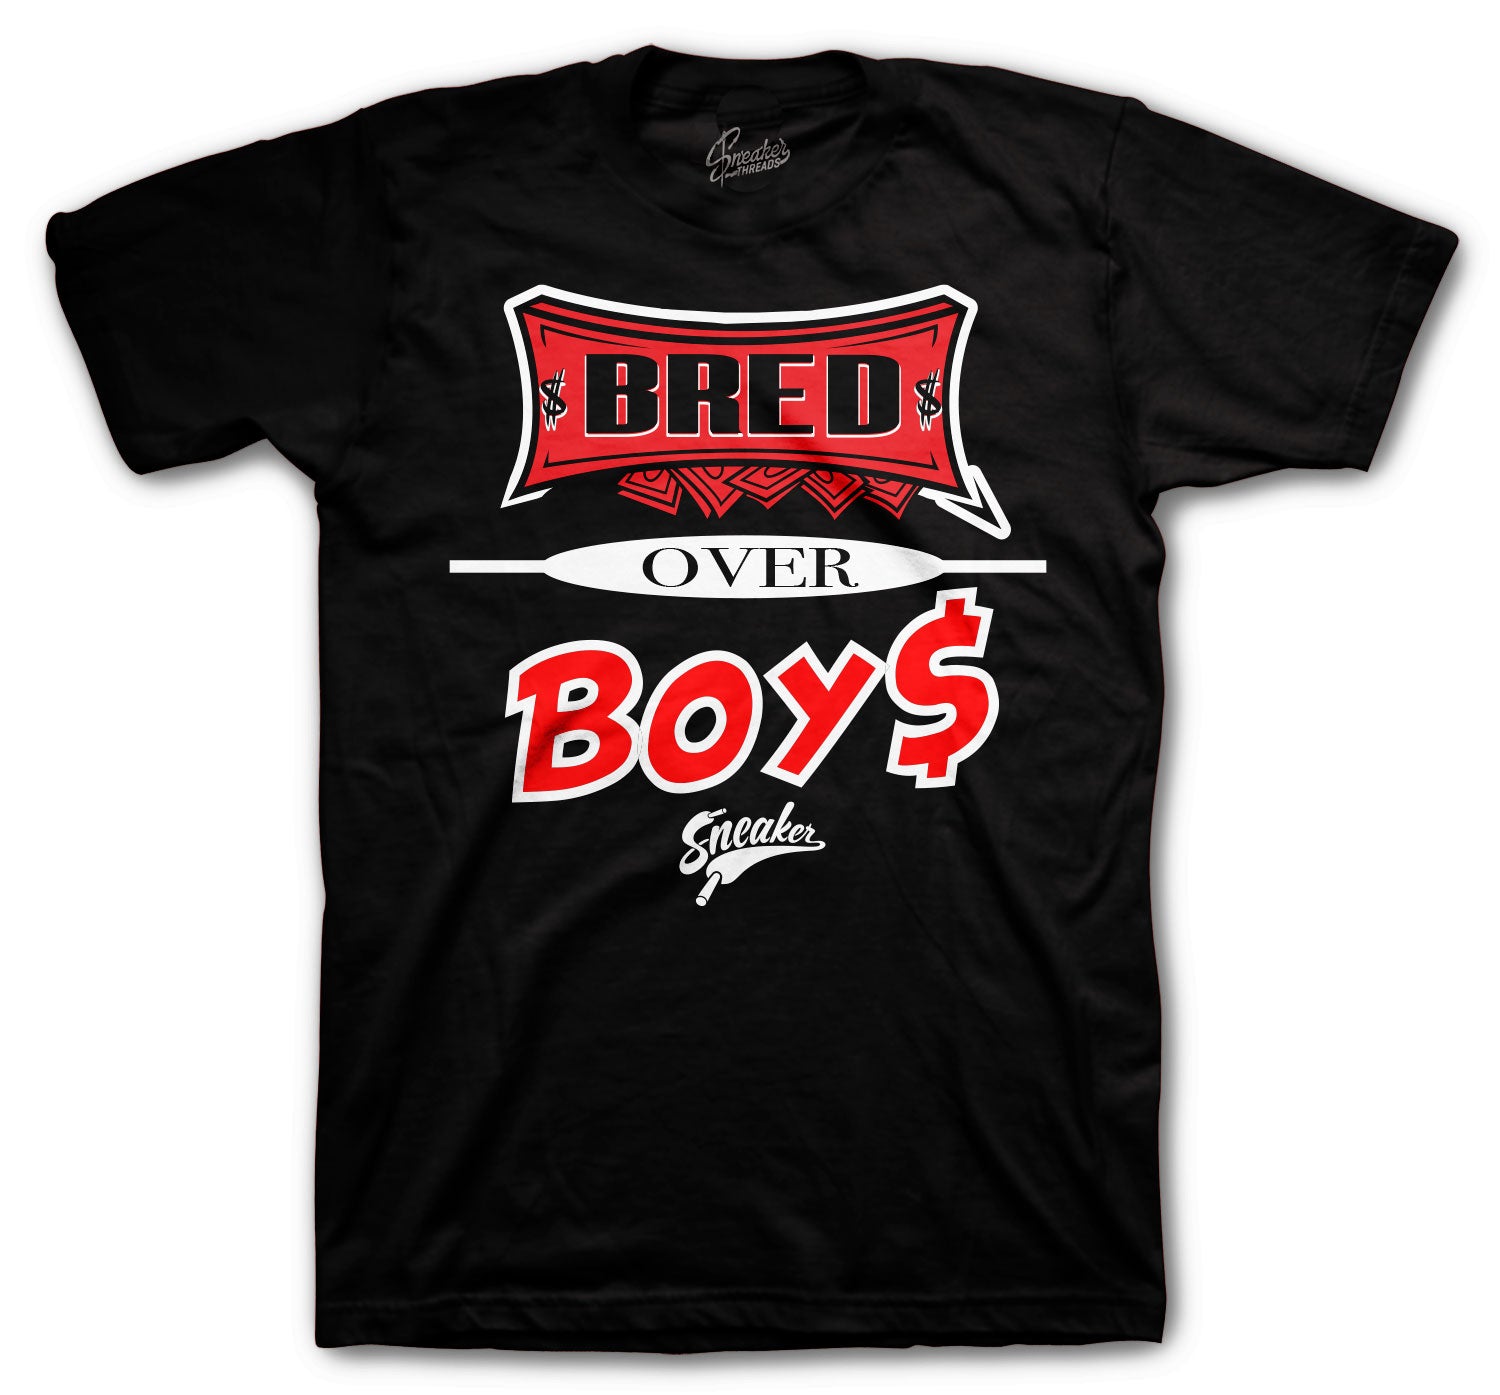 Retro 14 Lipstick Shirt - Bred Over Boys - Black